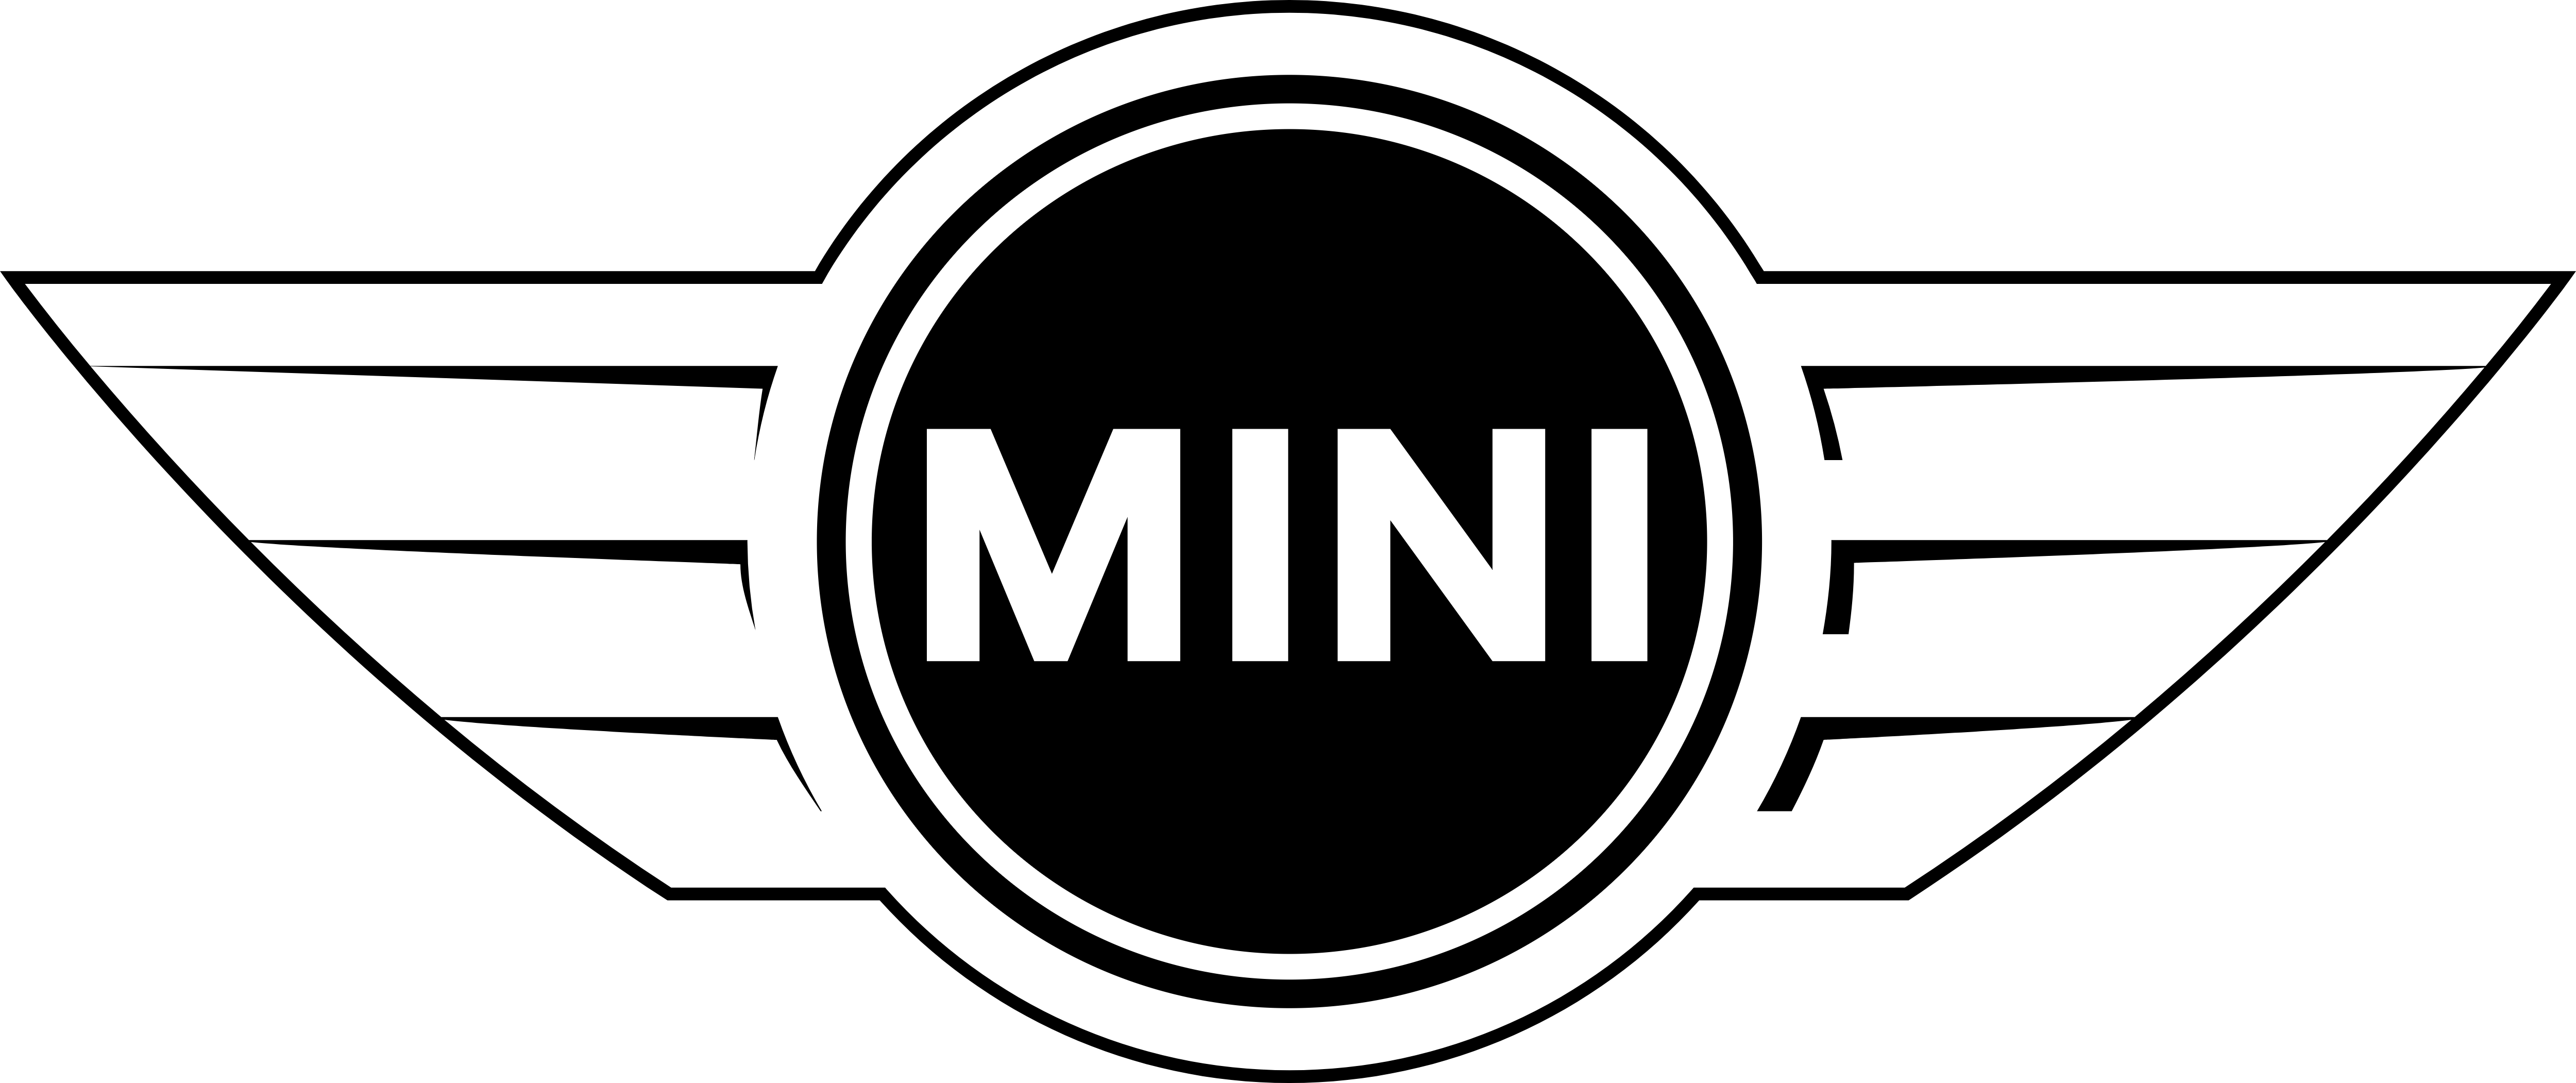 Line Miller Car Bmw Sticker PNG